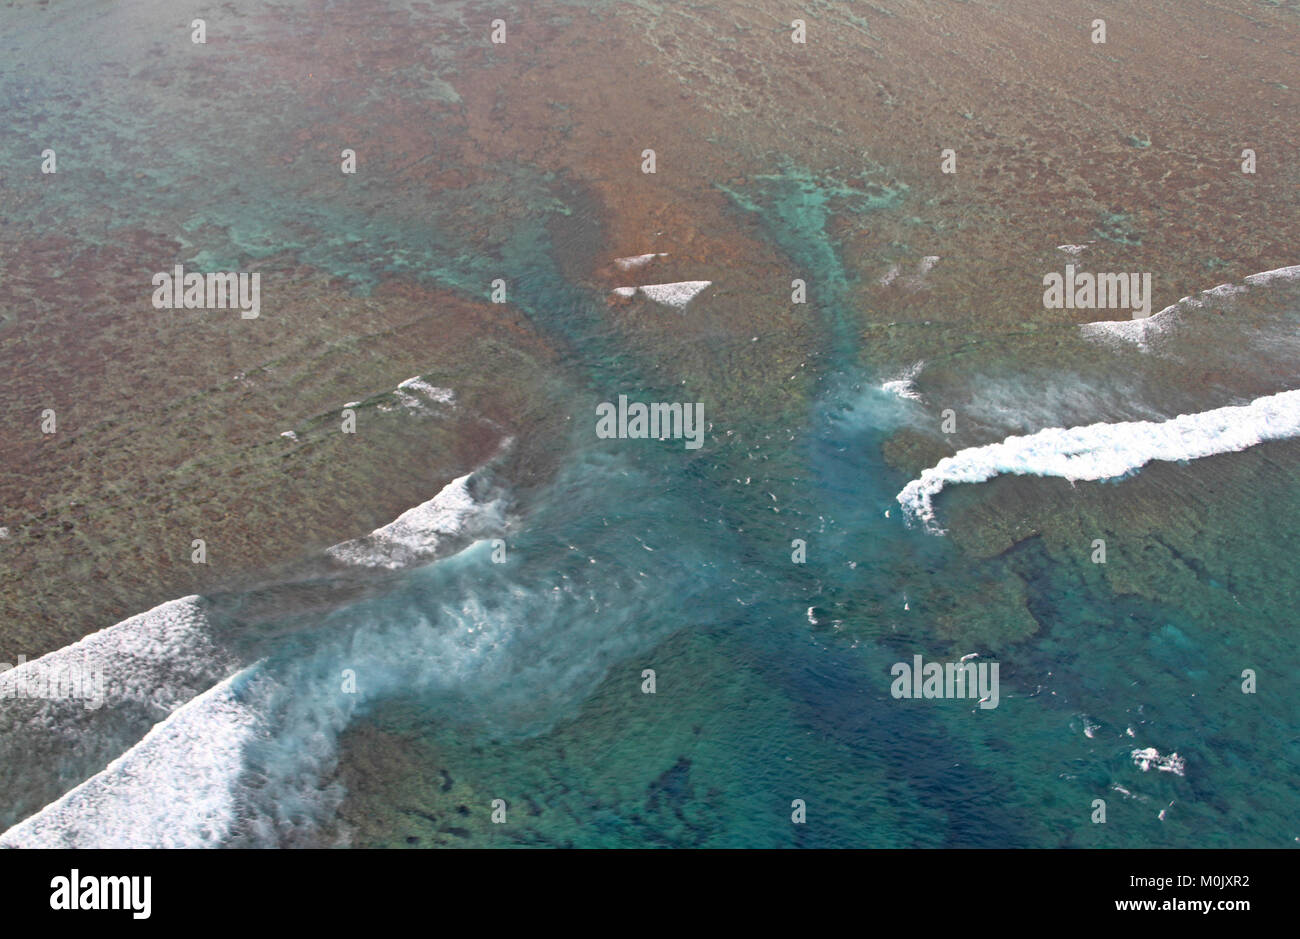 Cascade de sous-marins de la côte de la péninsule Le Morne Brabant, la République de Maurice. Vu d'un hélicoptère. Banque D'Images